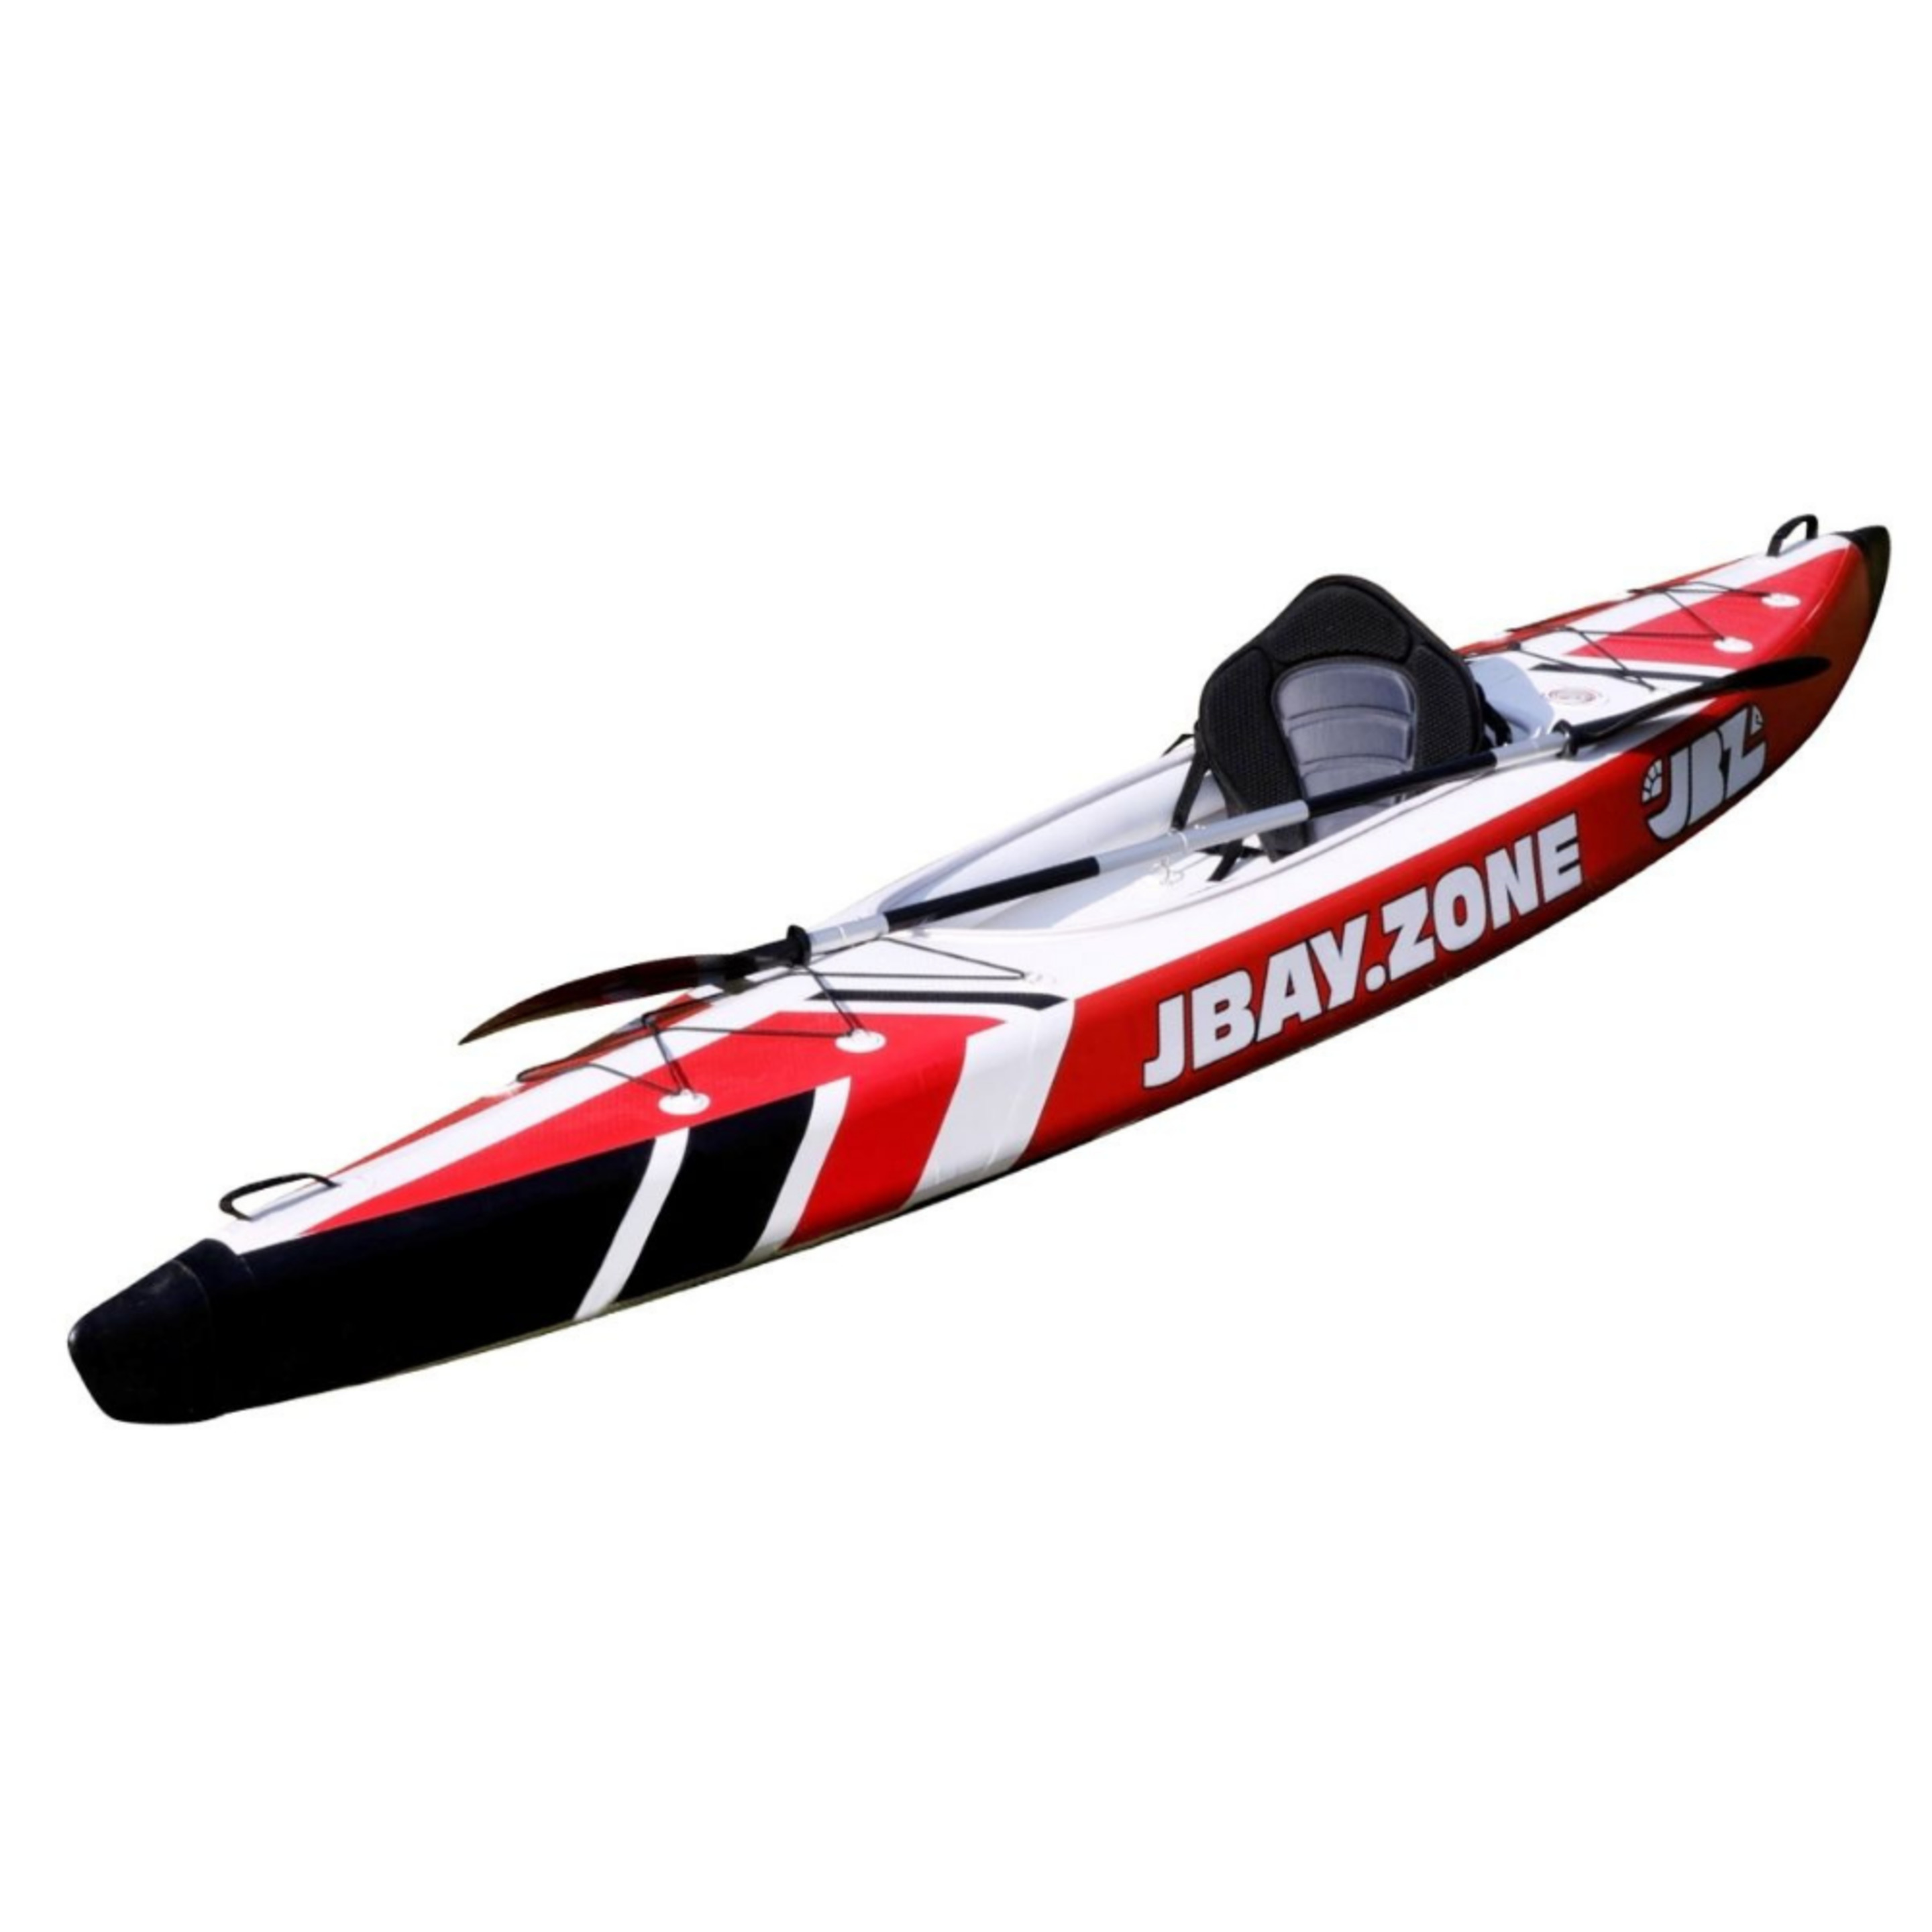 Kayak Hinchable 1 Plaza Jbay.zone V-shape Mono Enteramente En Drop-stitch - Blanco/Rojo - Kayak individual MKP